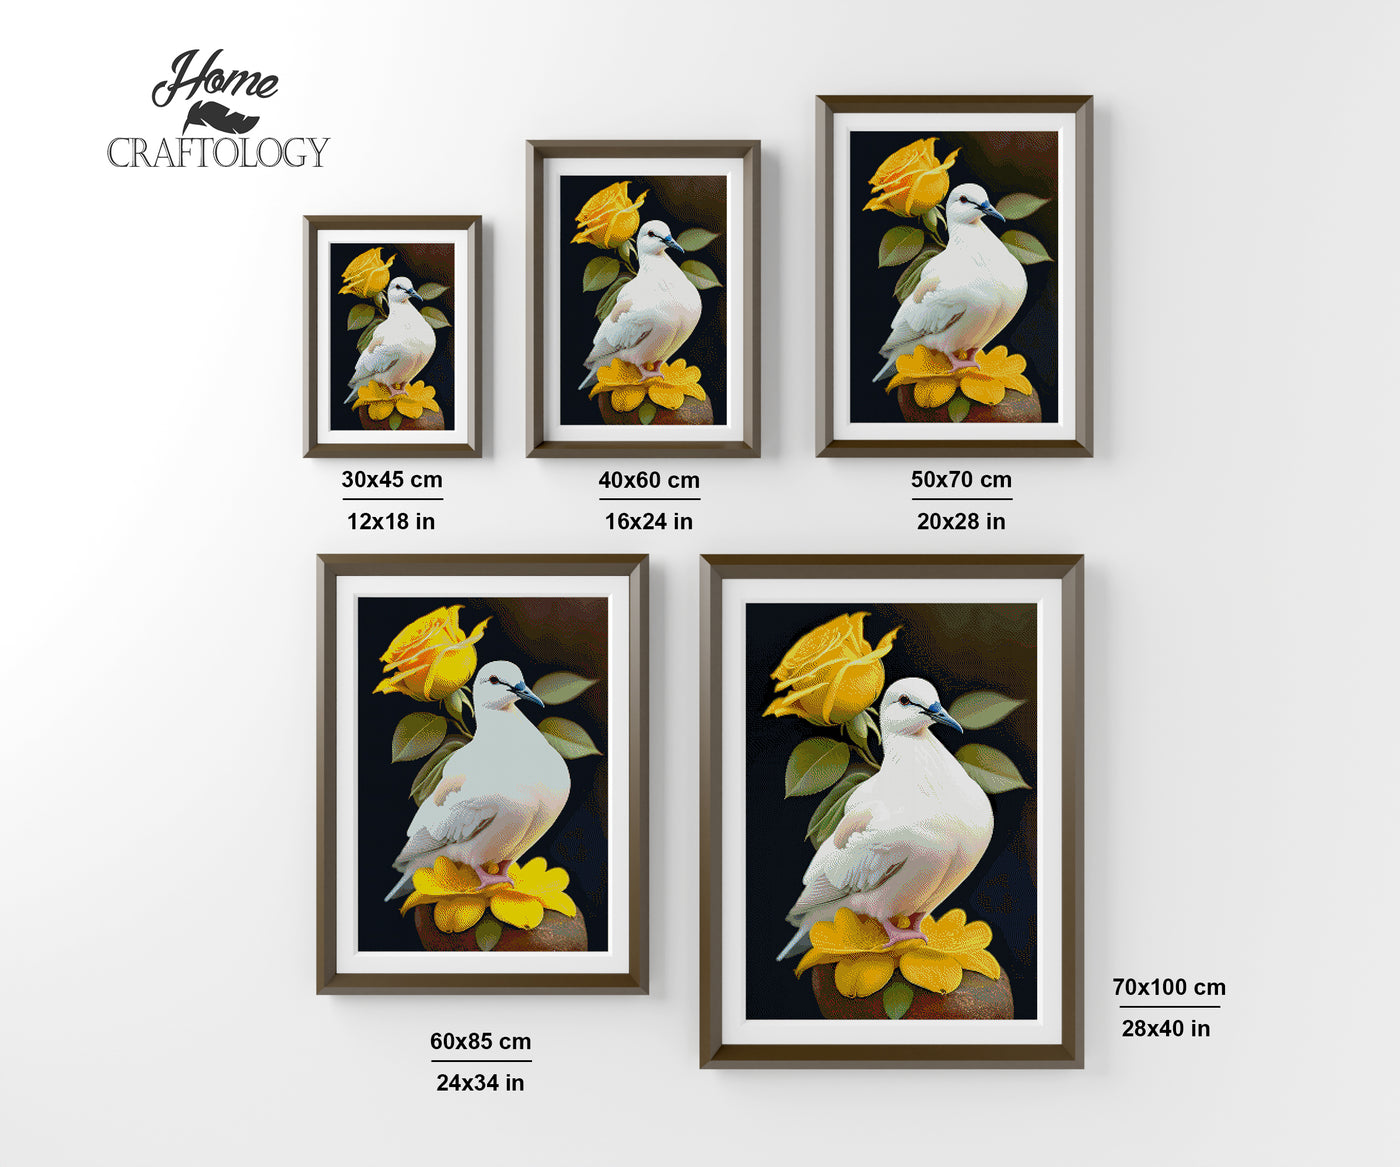 White Bird and Yellow Roses - Premium Diamond Painting Kit